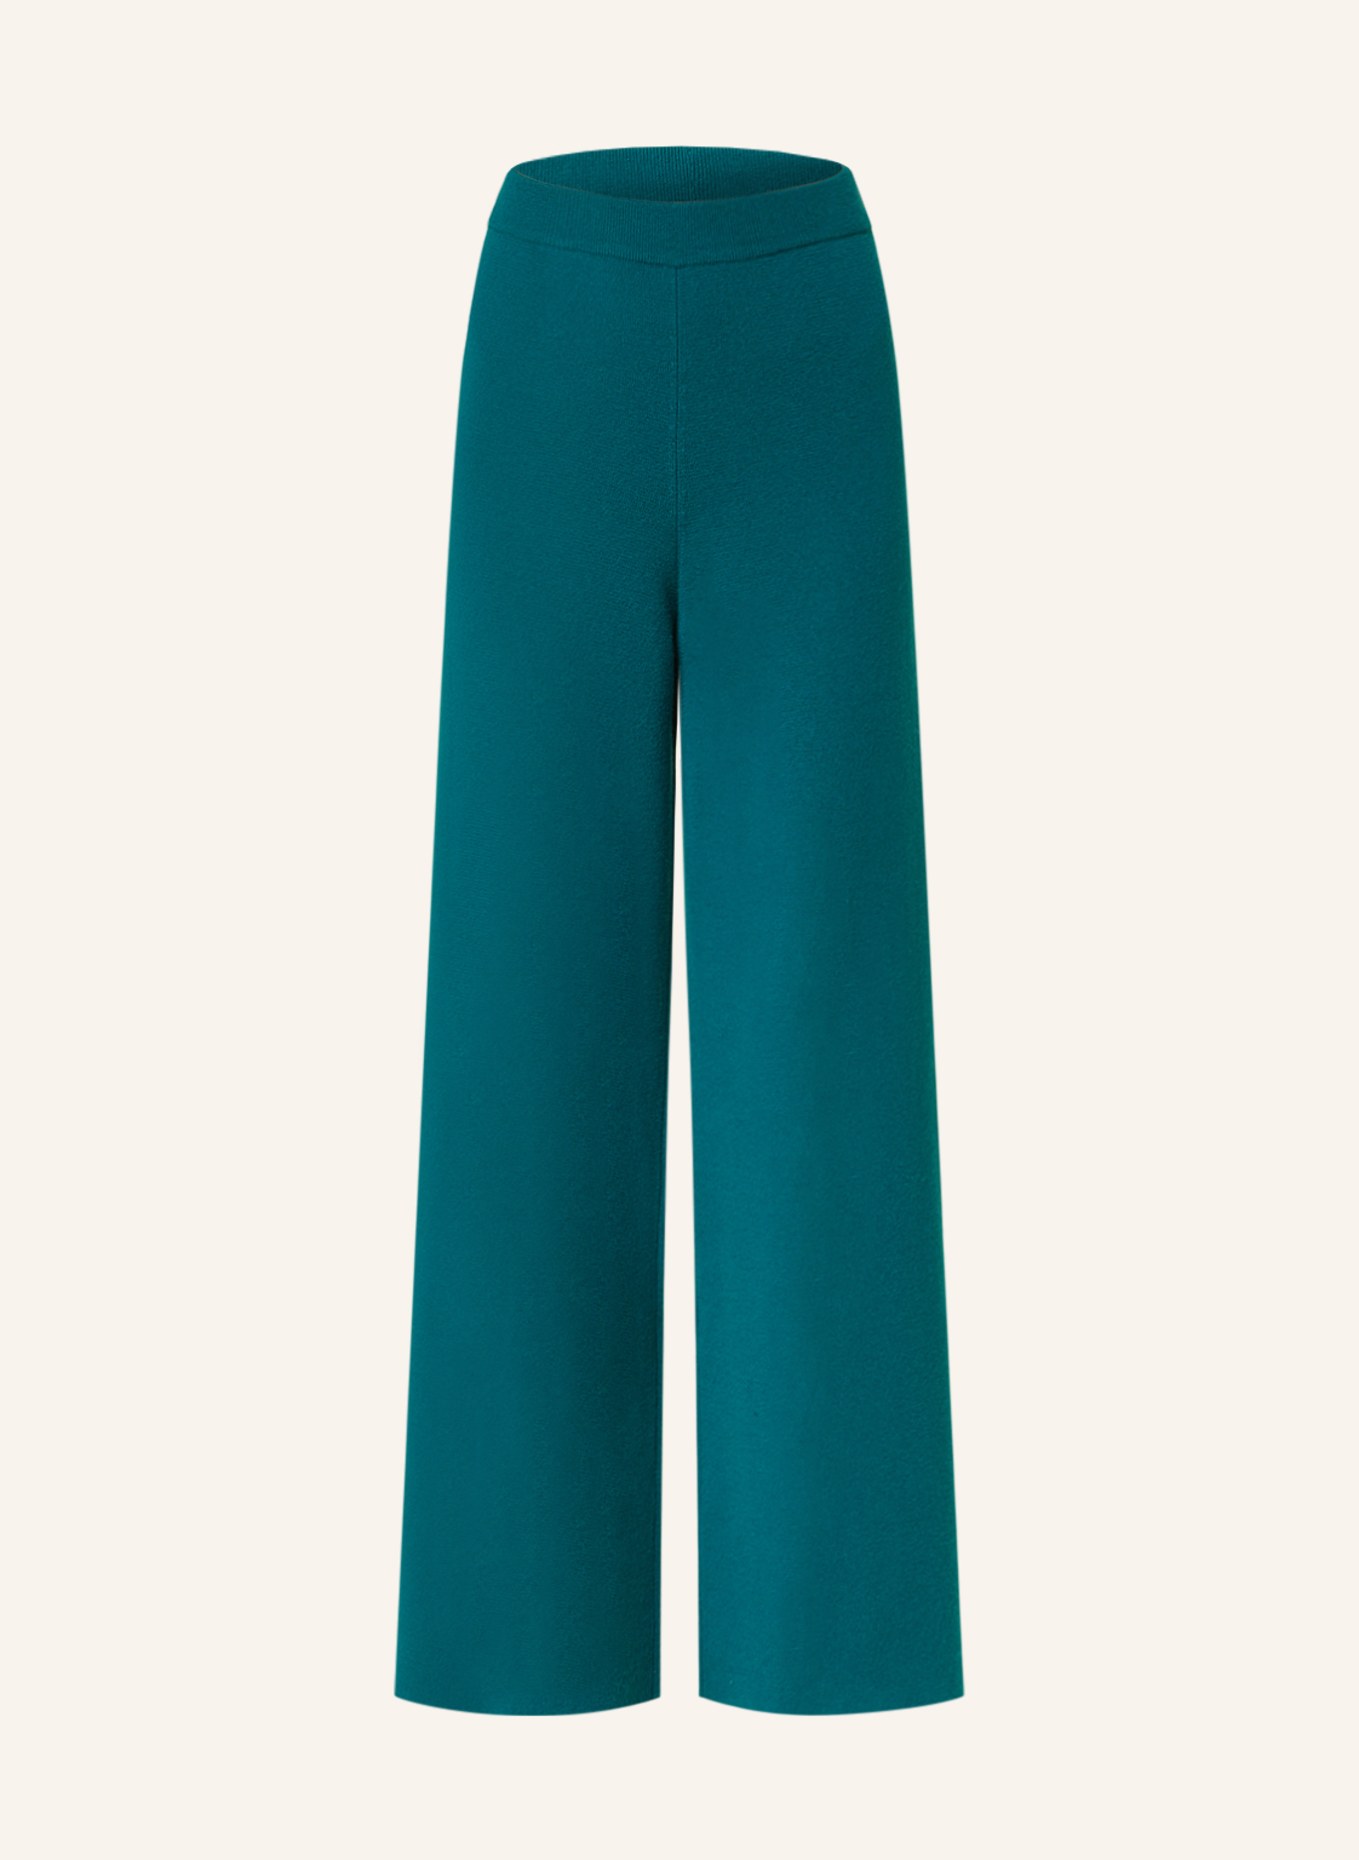 SEM PER LEI Strickhose mit Cashmere, Farbe: PETROL (Bild 1)